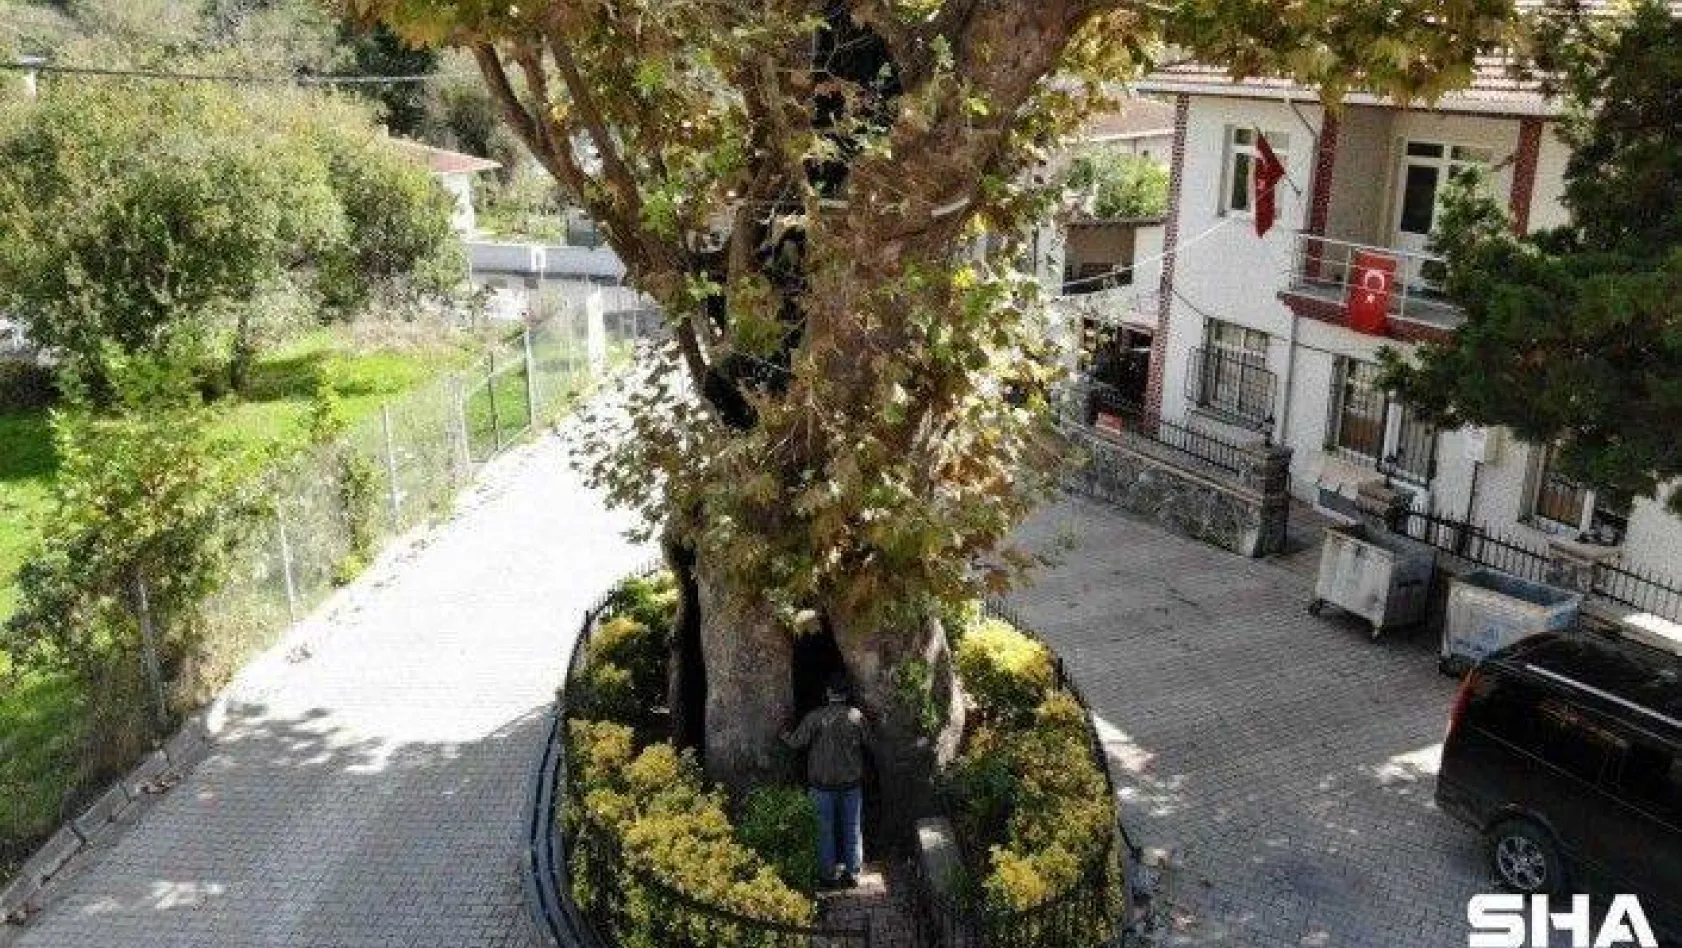 (Özel) Rum çetelerin işkencelerine tanıklık eden 8 asırlık 'işkence ağacı'